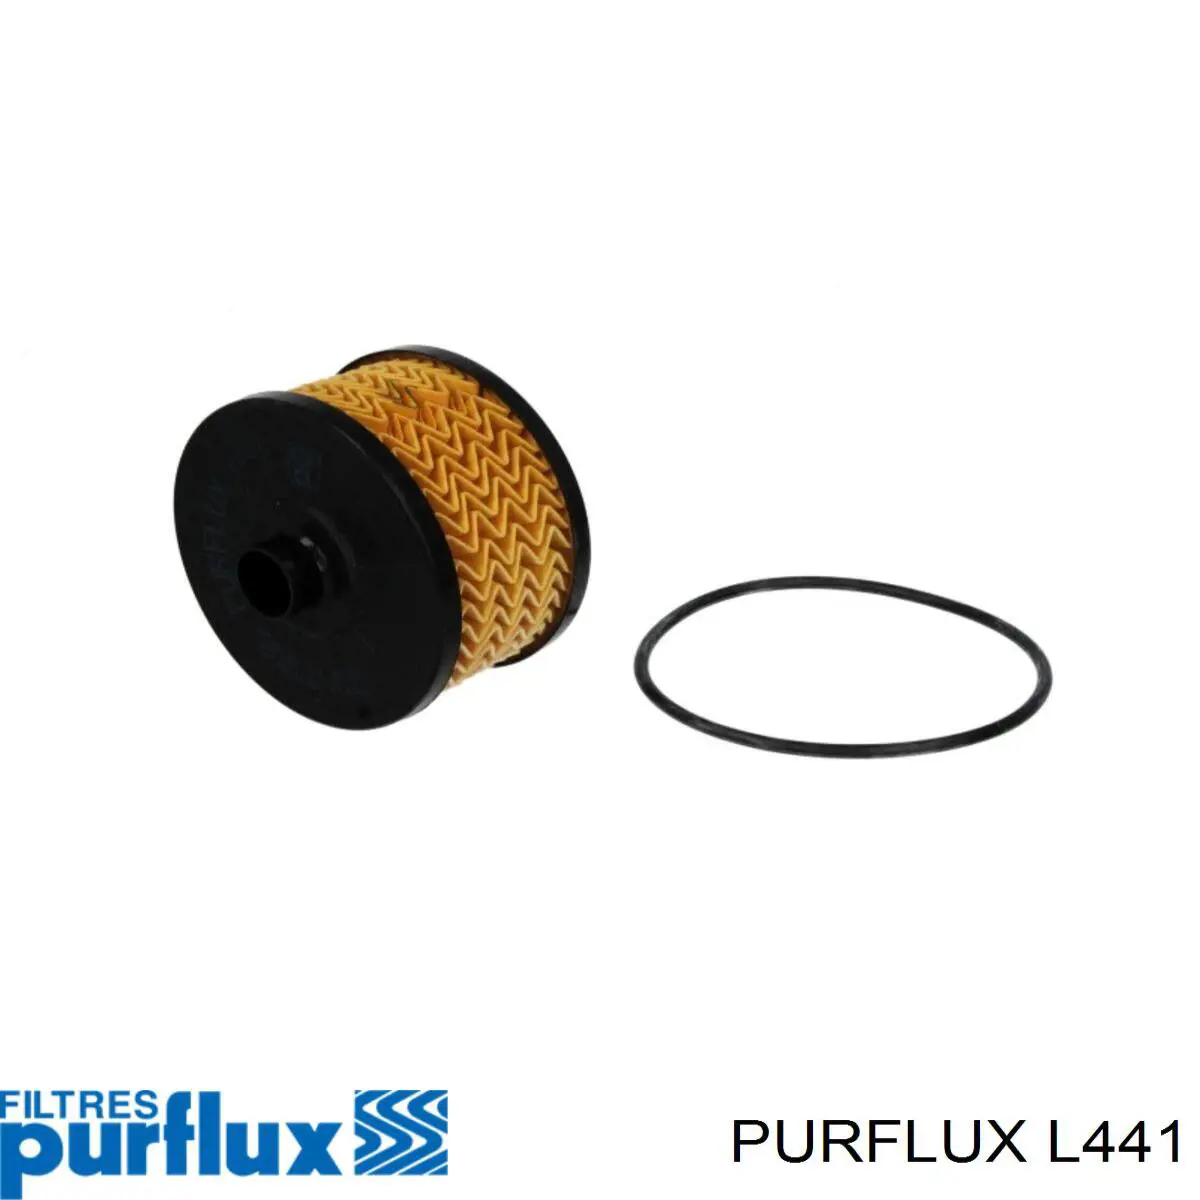 L441 Purflux filtro de aceite